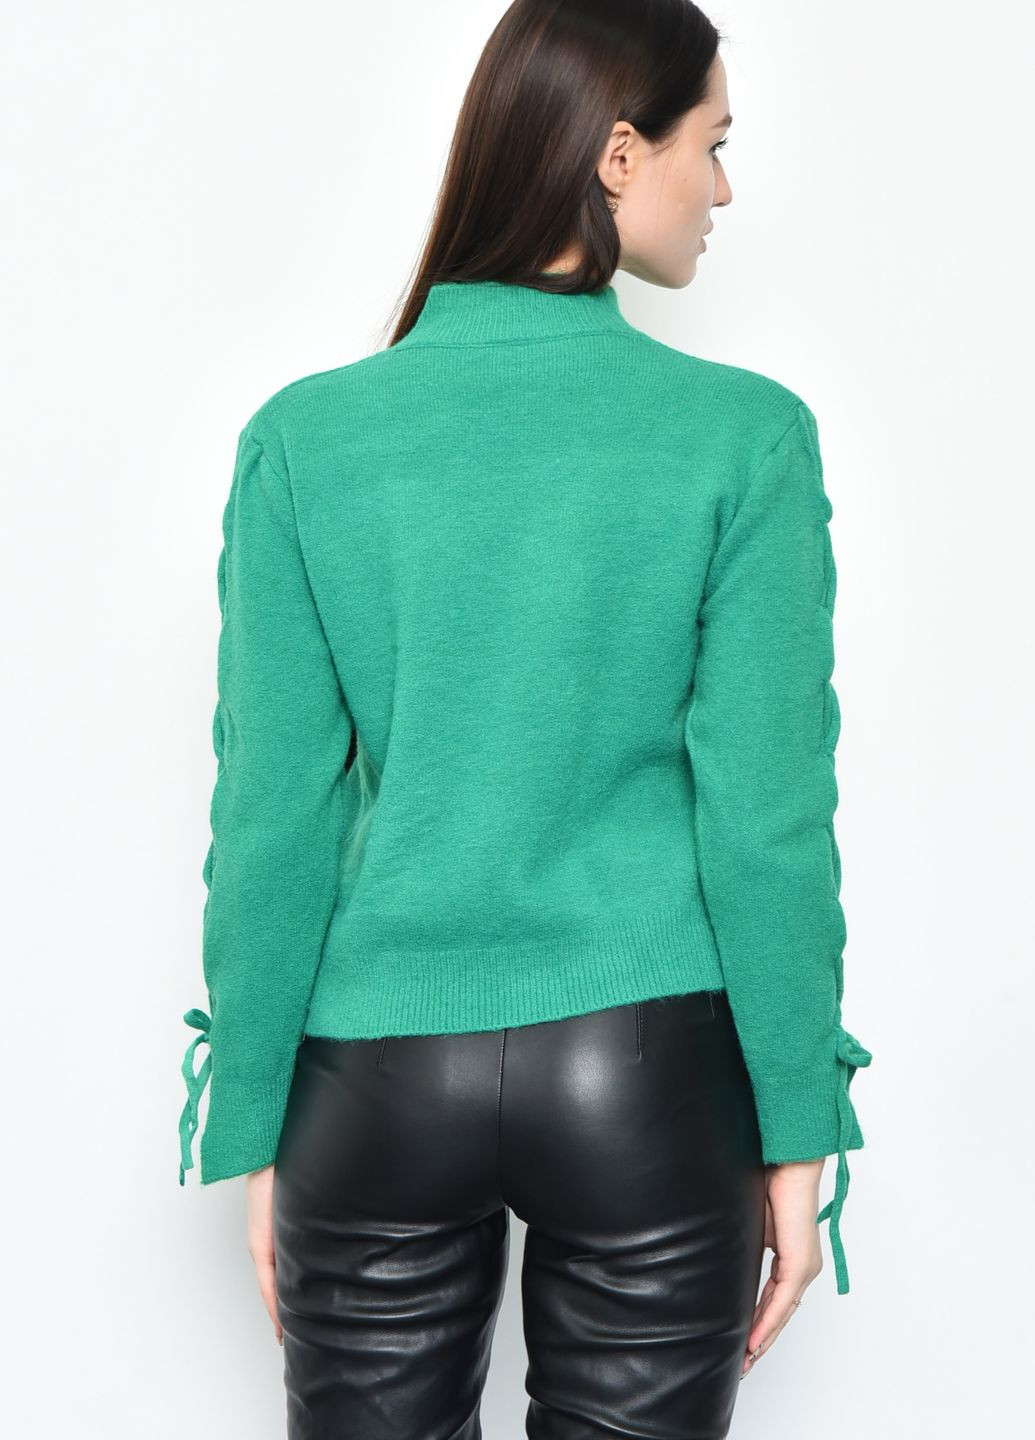 Зеленый зимний свитер женский ангора зеленого цвета пуловер Let's Shop